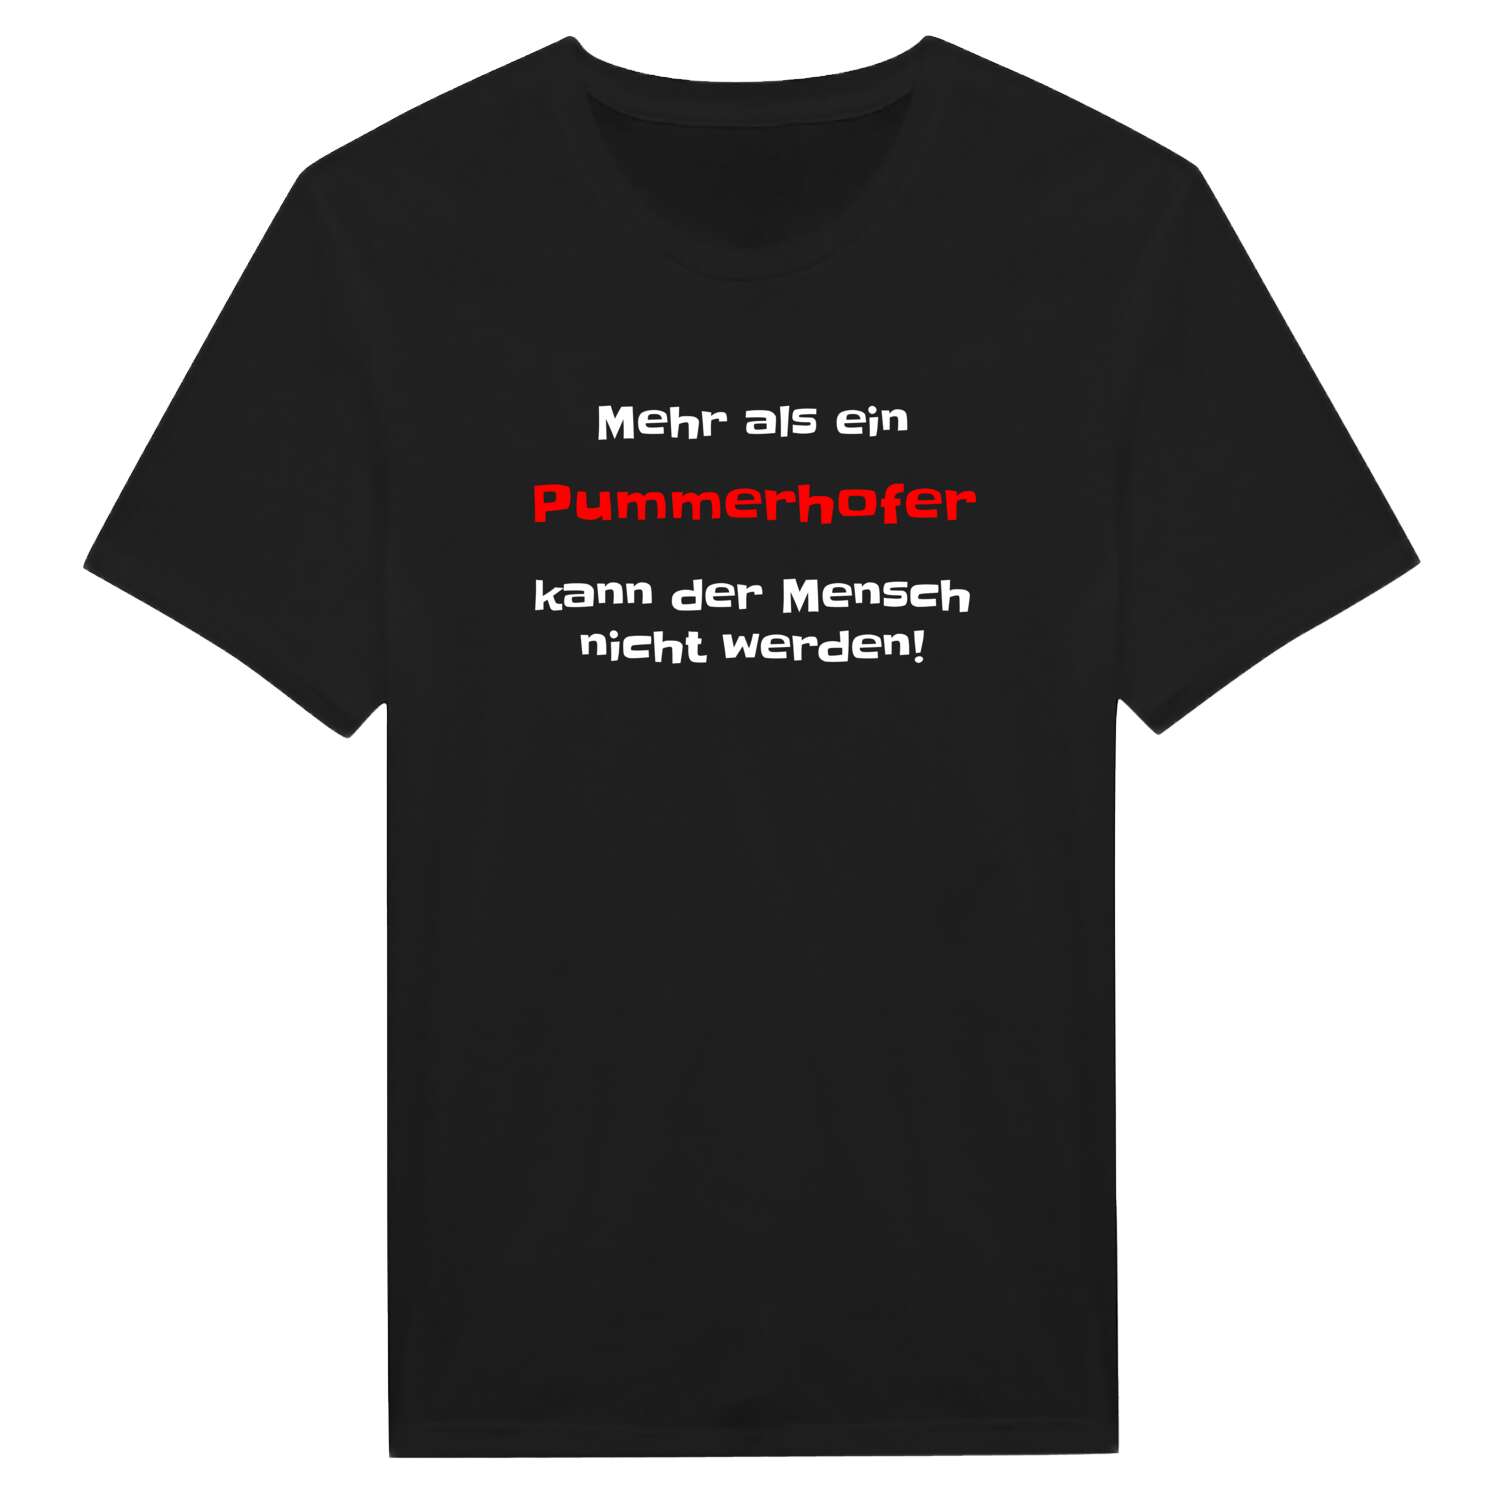 Pummerhof T-Shirt »Mehr als ein«